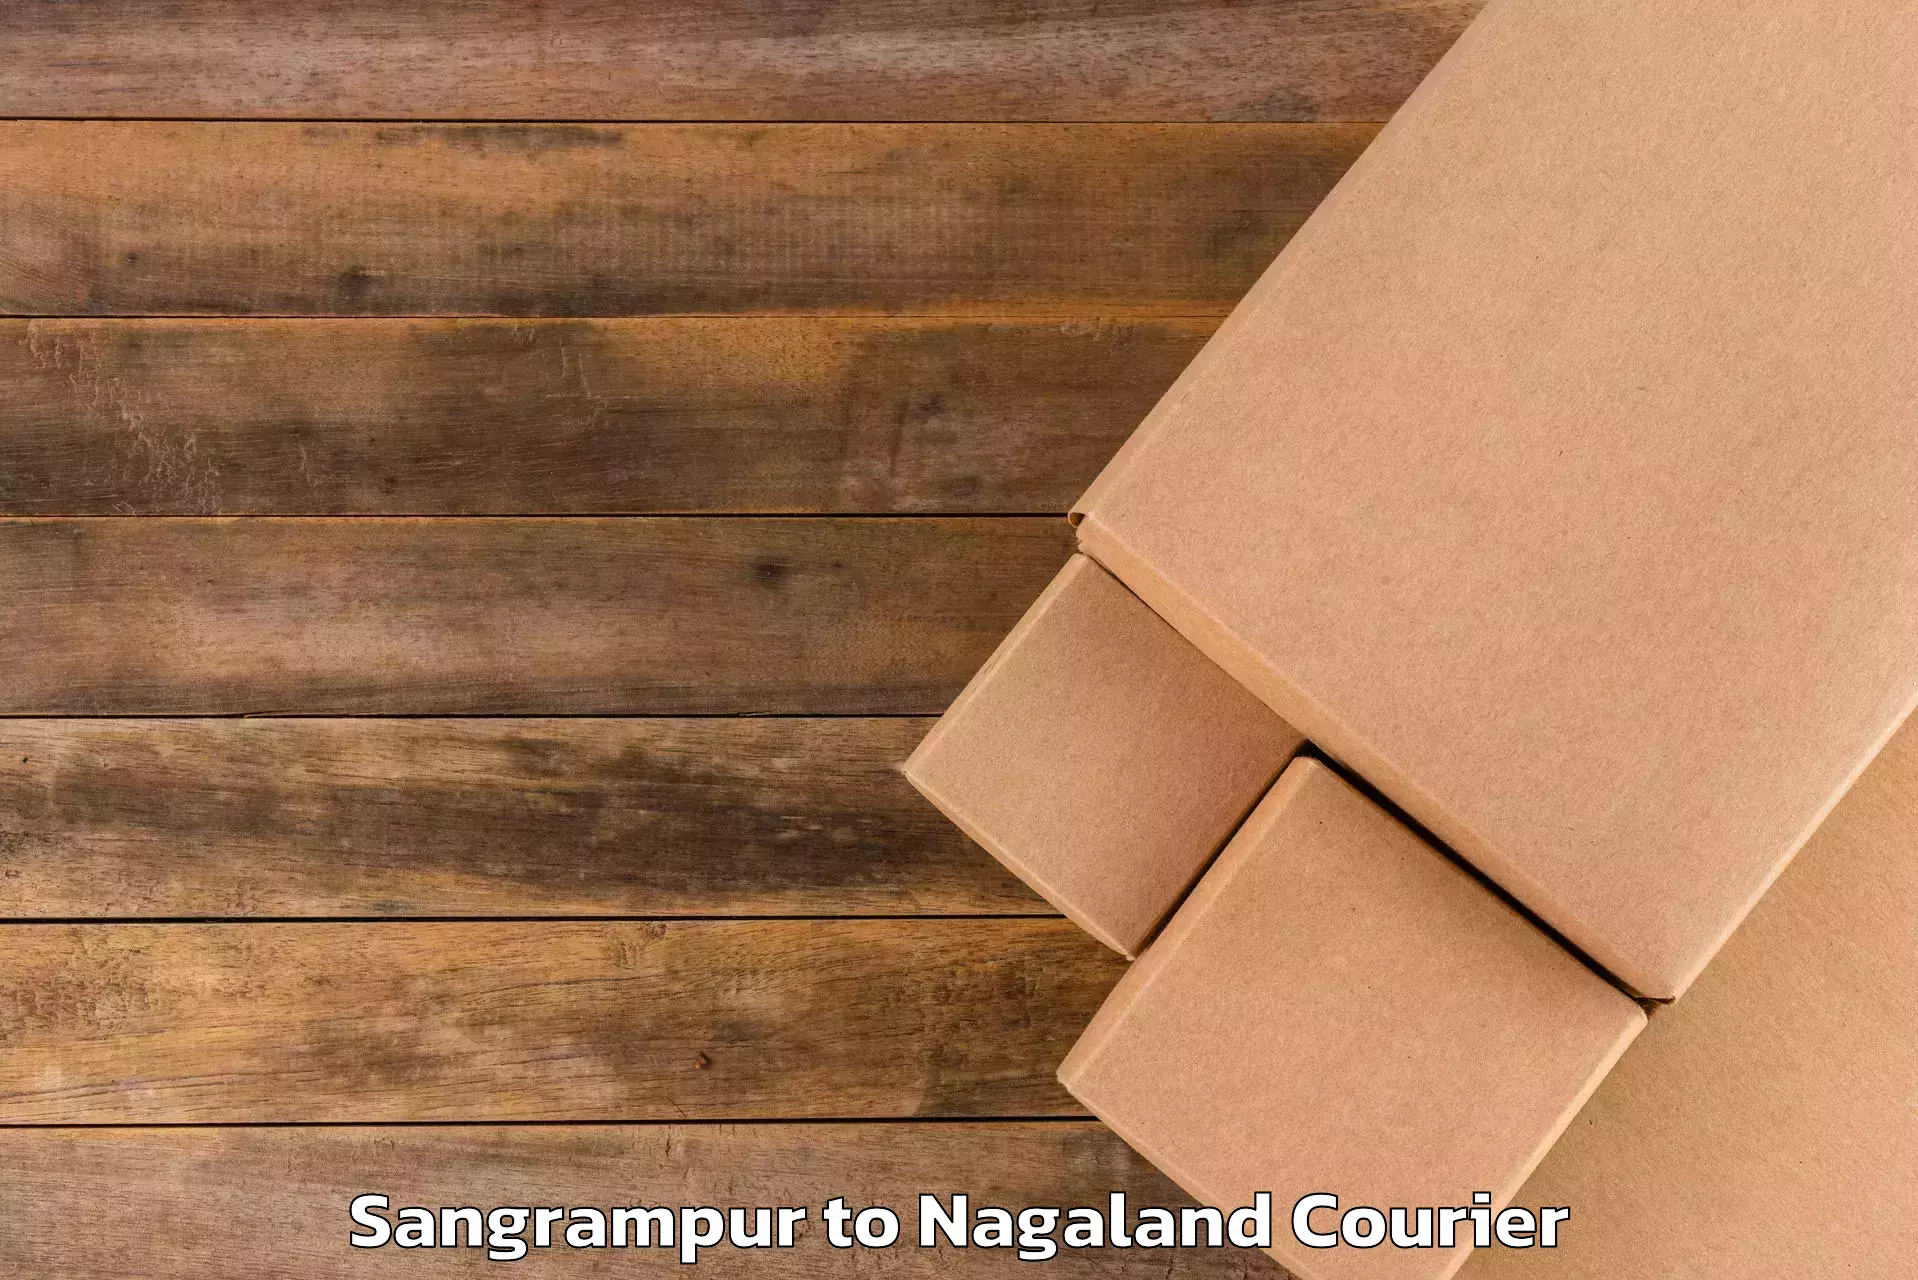 Luggage shipping planner Sangrampur to Dimapur